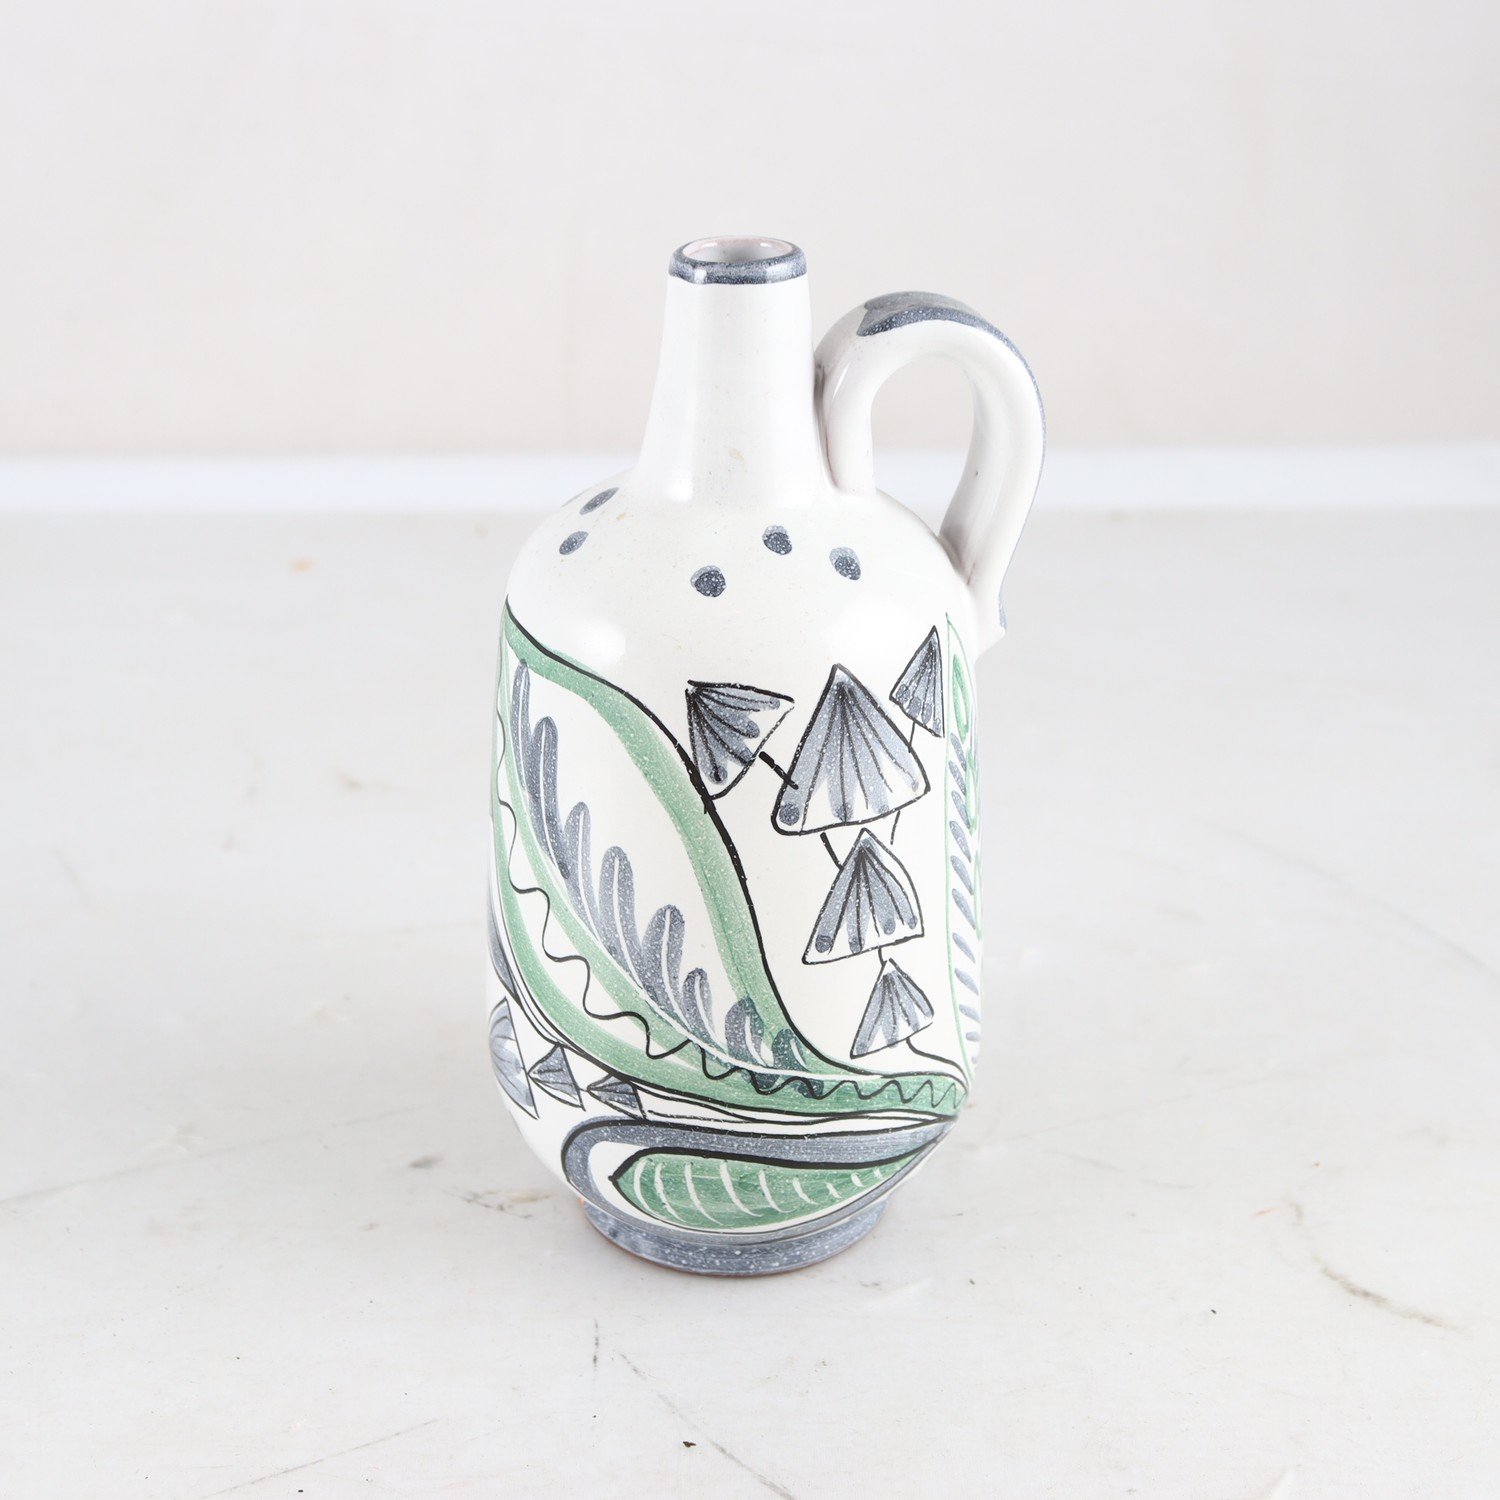 Vas, Berit Davidsson, Laholms keramik.